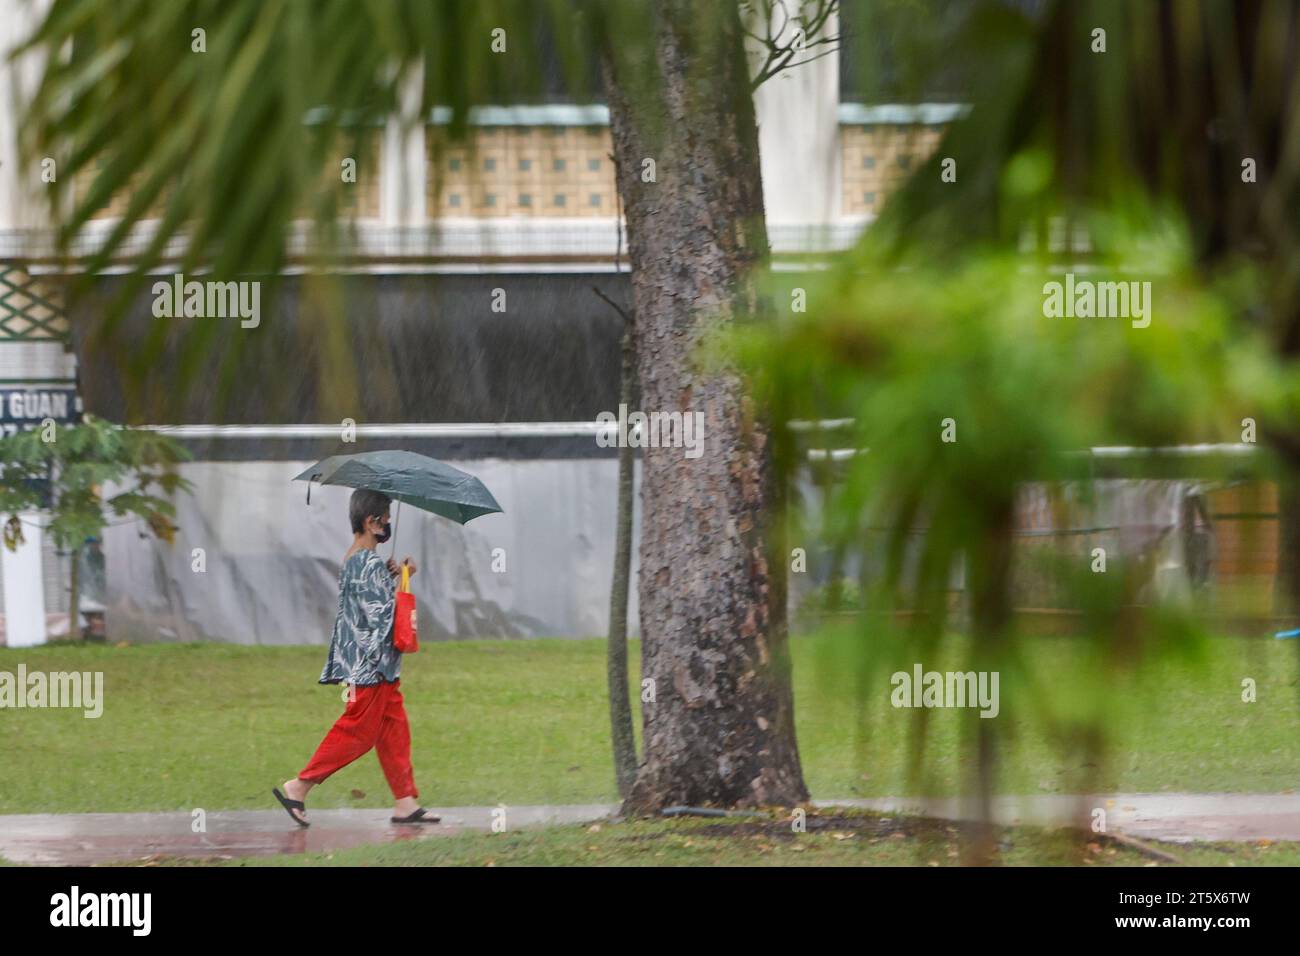 Singapur, Singapur, Singapur. November 2023. Eine Frau mit einem Regenschirm wird bei starkem Regen gesehen, was im Oktober bei den höchsten Temperaturen eine Pause einbringt. Angesichts der globalen Erwärmung und des Klimawandels positioniert sich Singapur als CO2-Drehscheibe Asiens, indem es CO2-Steuern einführt und nachhaltige Energiepolitiken umsetzt und gleichzeitig versucht, den Stadtstaat durch das Pflanzen weiterer Bäume grüner zu machen. (Kreditbild: © Daniel Ceng Shou-Yi/ZUMA Press Wire) NUR REDAKTIONELLE VERWENDUNG! Nicht für kommerzielle ZWECKE! Stockfoto